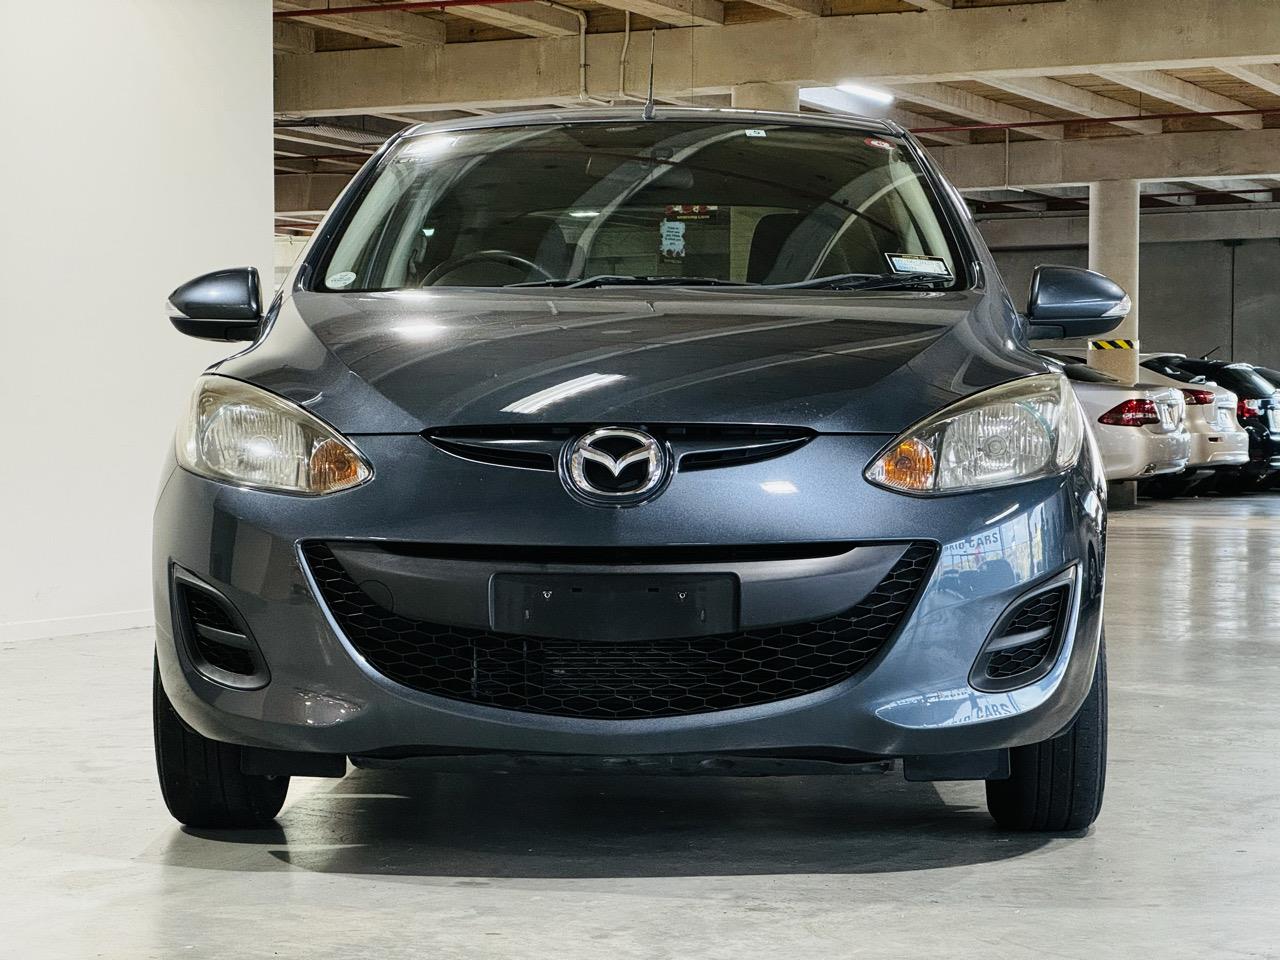 2011 Mazda Demio